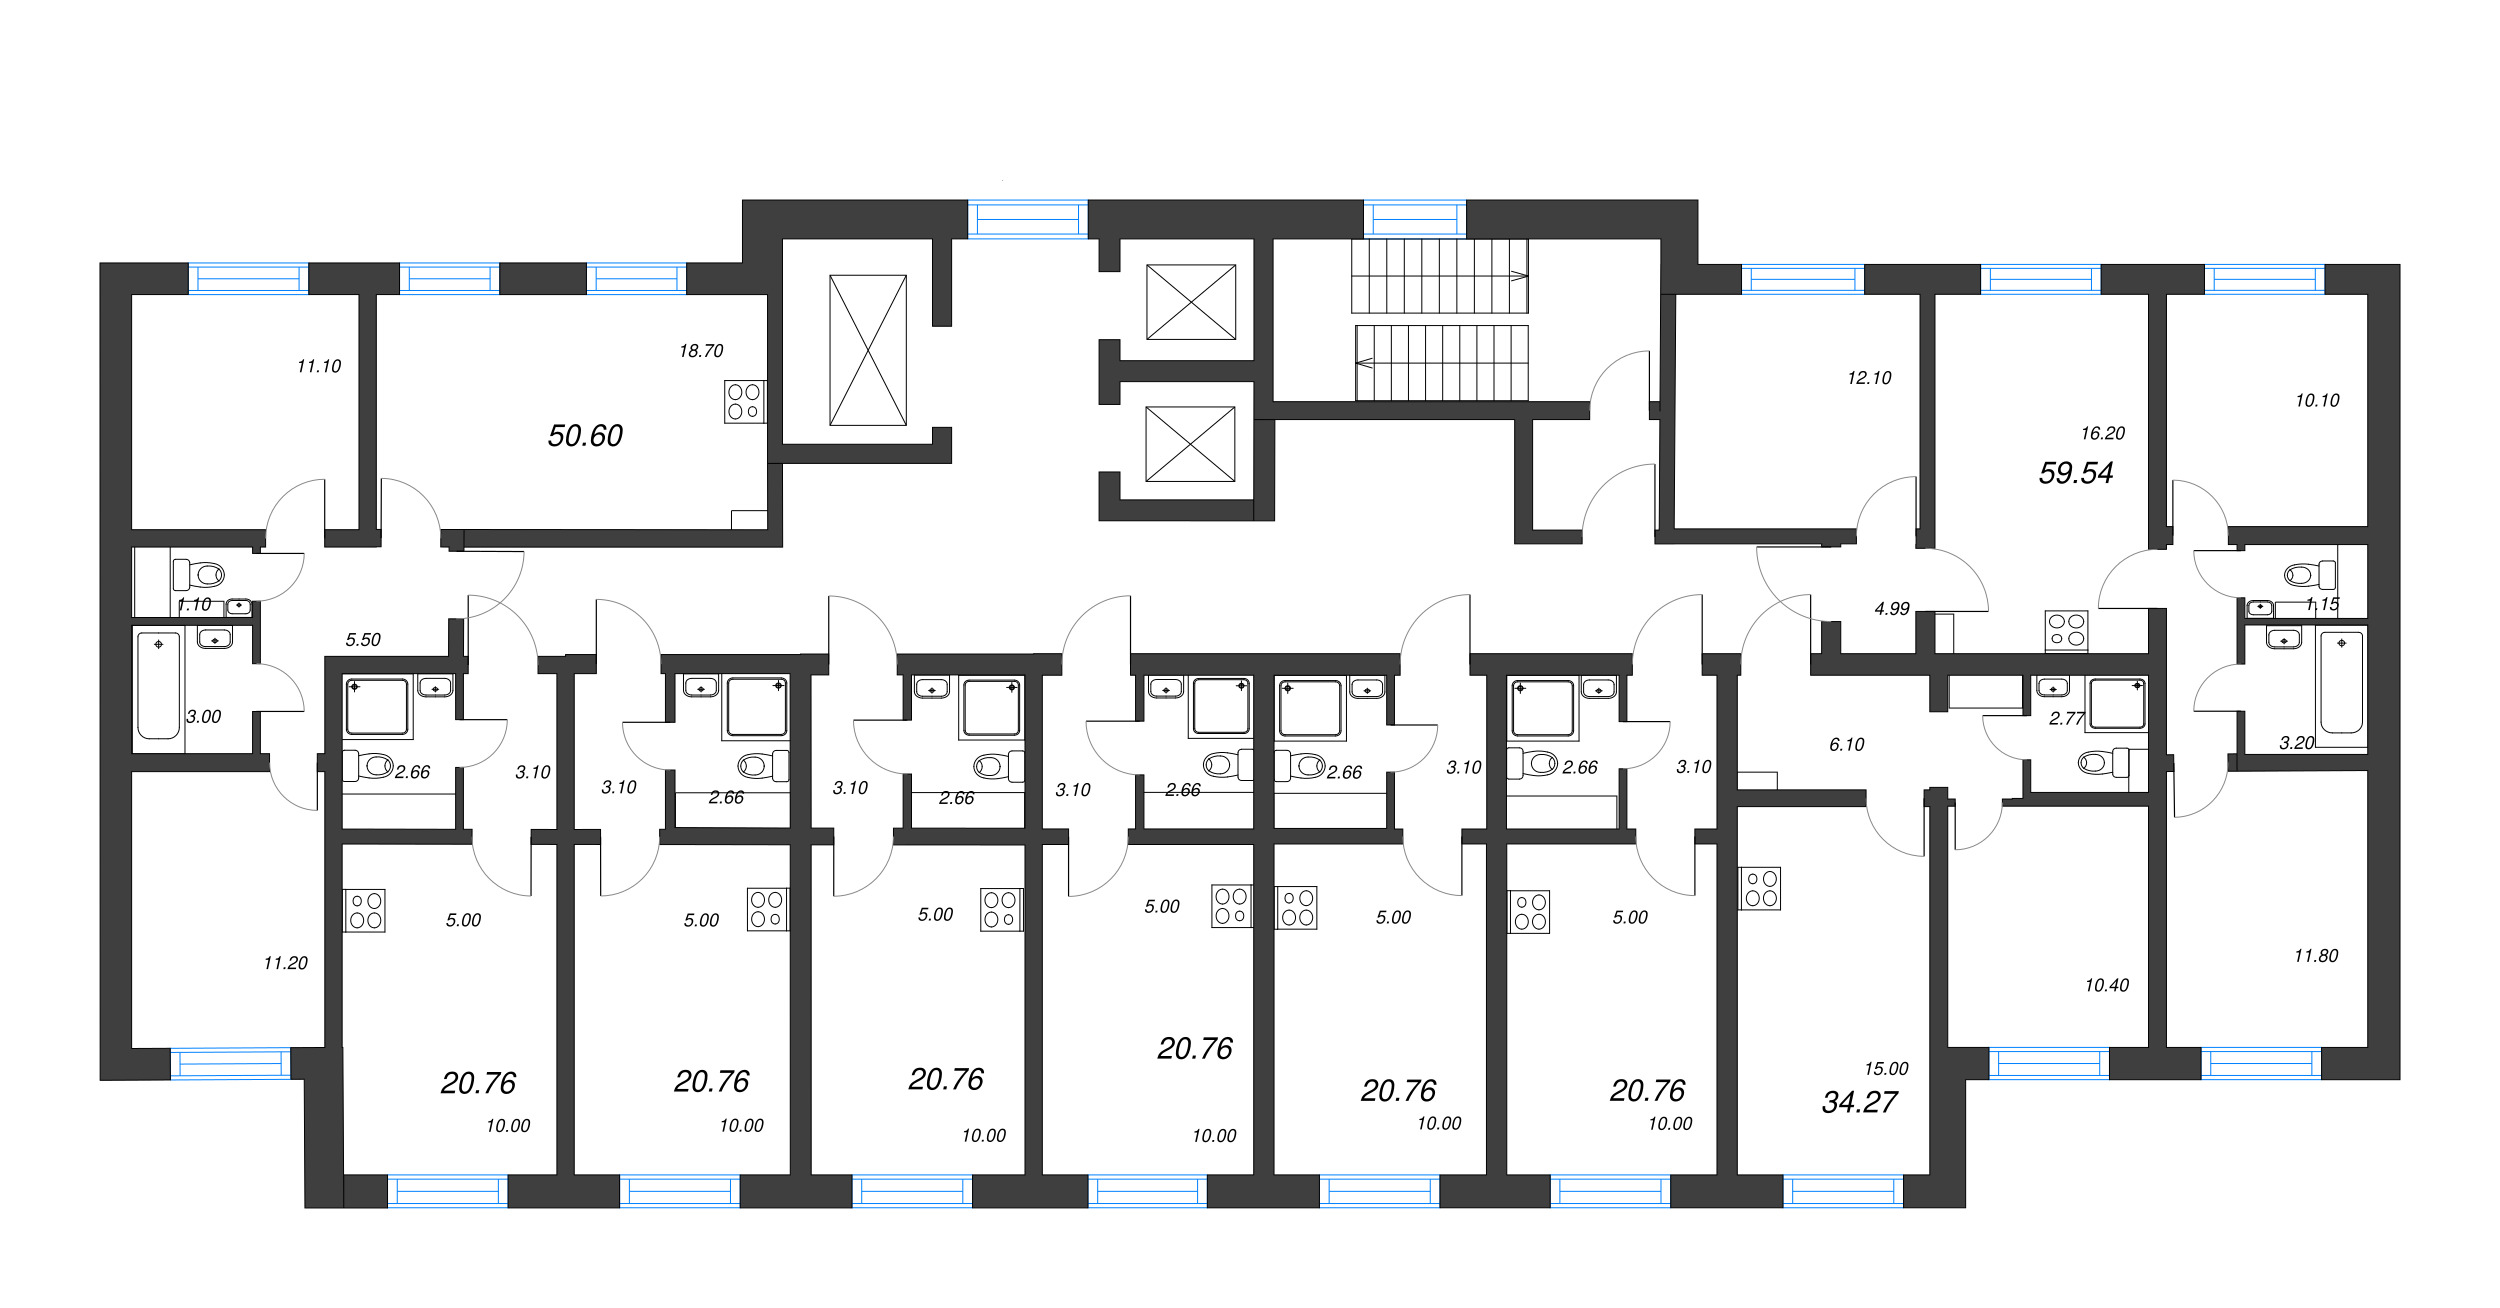 4-комнатная (Евро) квартира, 59.54 м² в ЖК "Ручьи" - планировка этажа